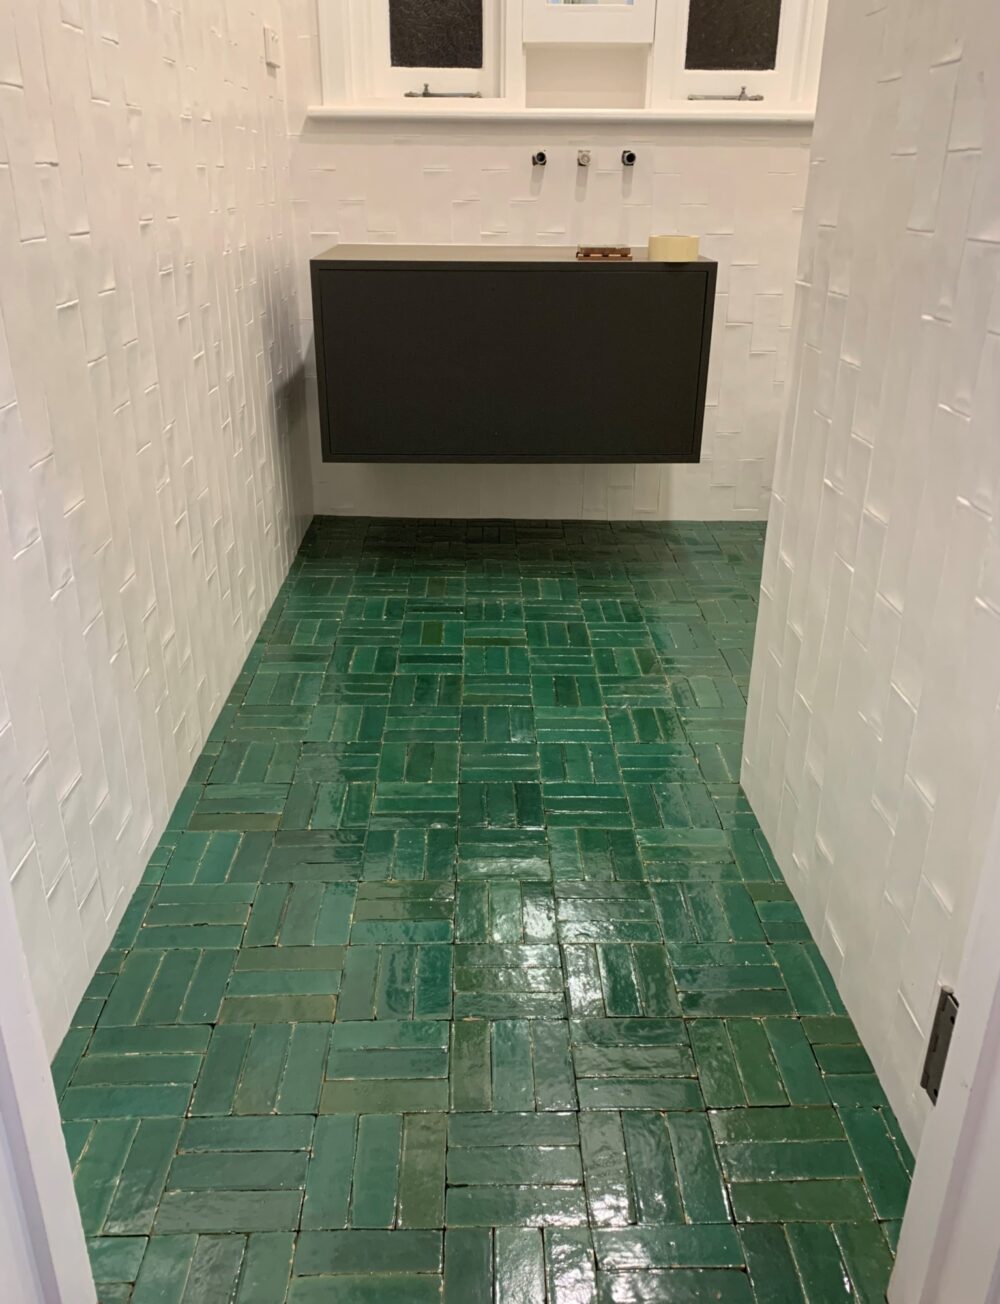 BATHROOM FLOOR TILE: Bejmat Emerald